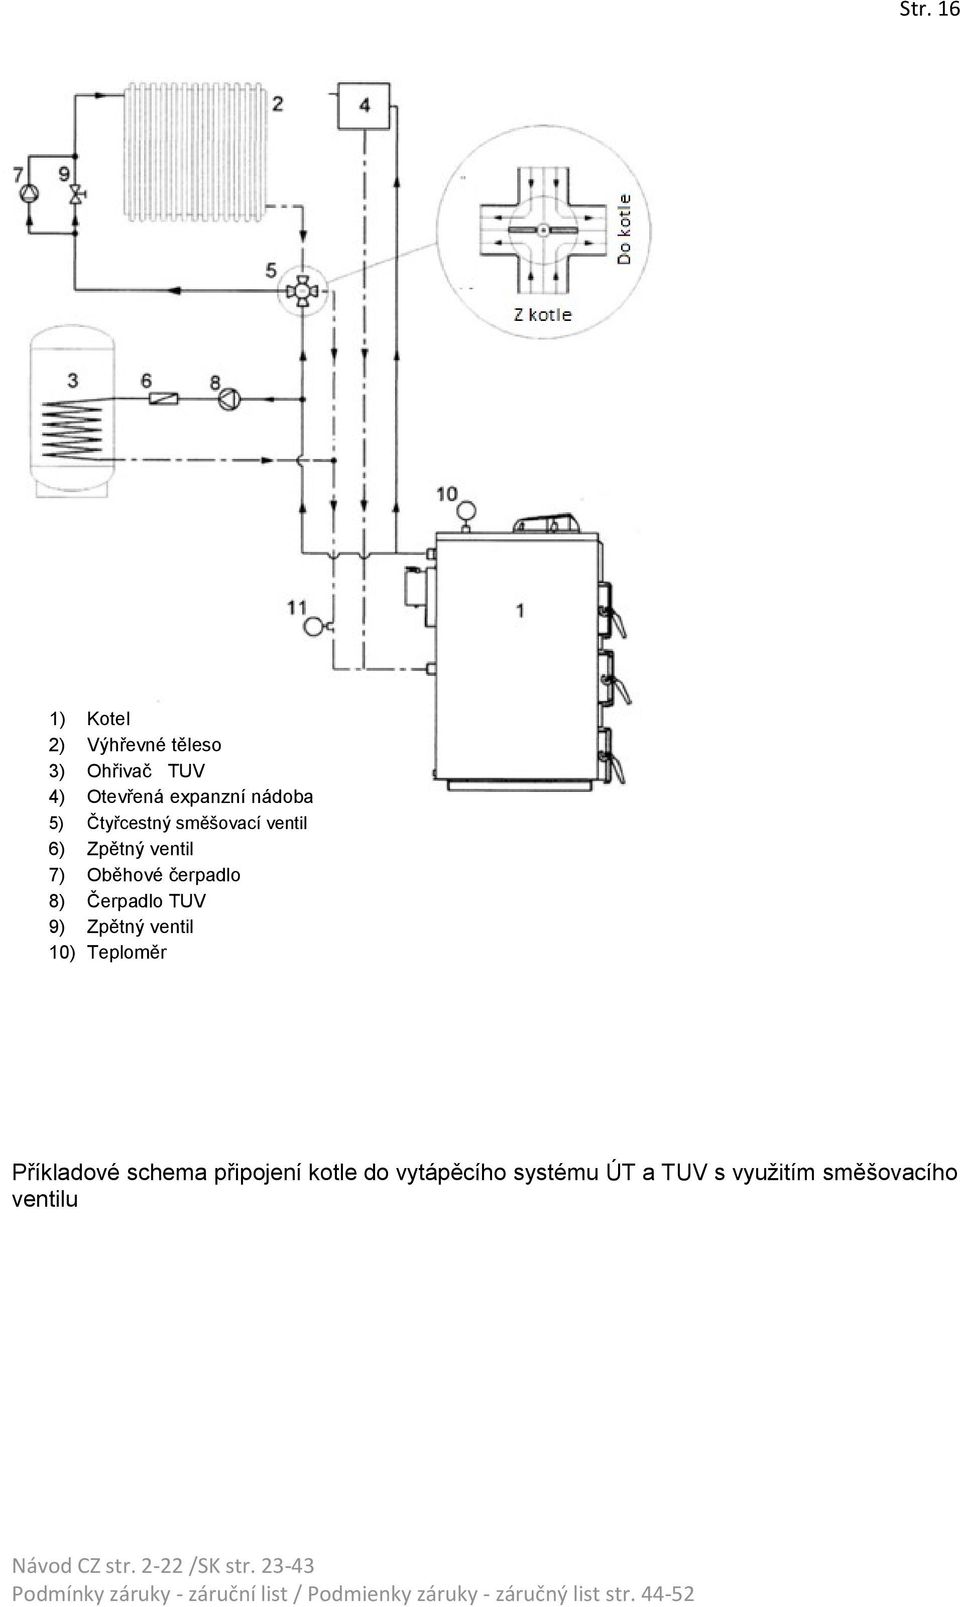 čerpadlo 8) Čerpadlo TUV 9) Zpětný ventil 10) Teploměr Příkladové